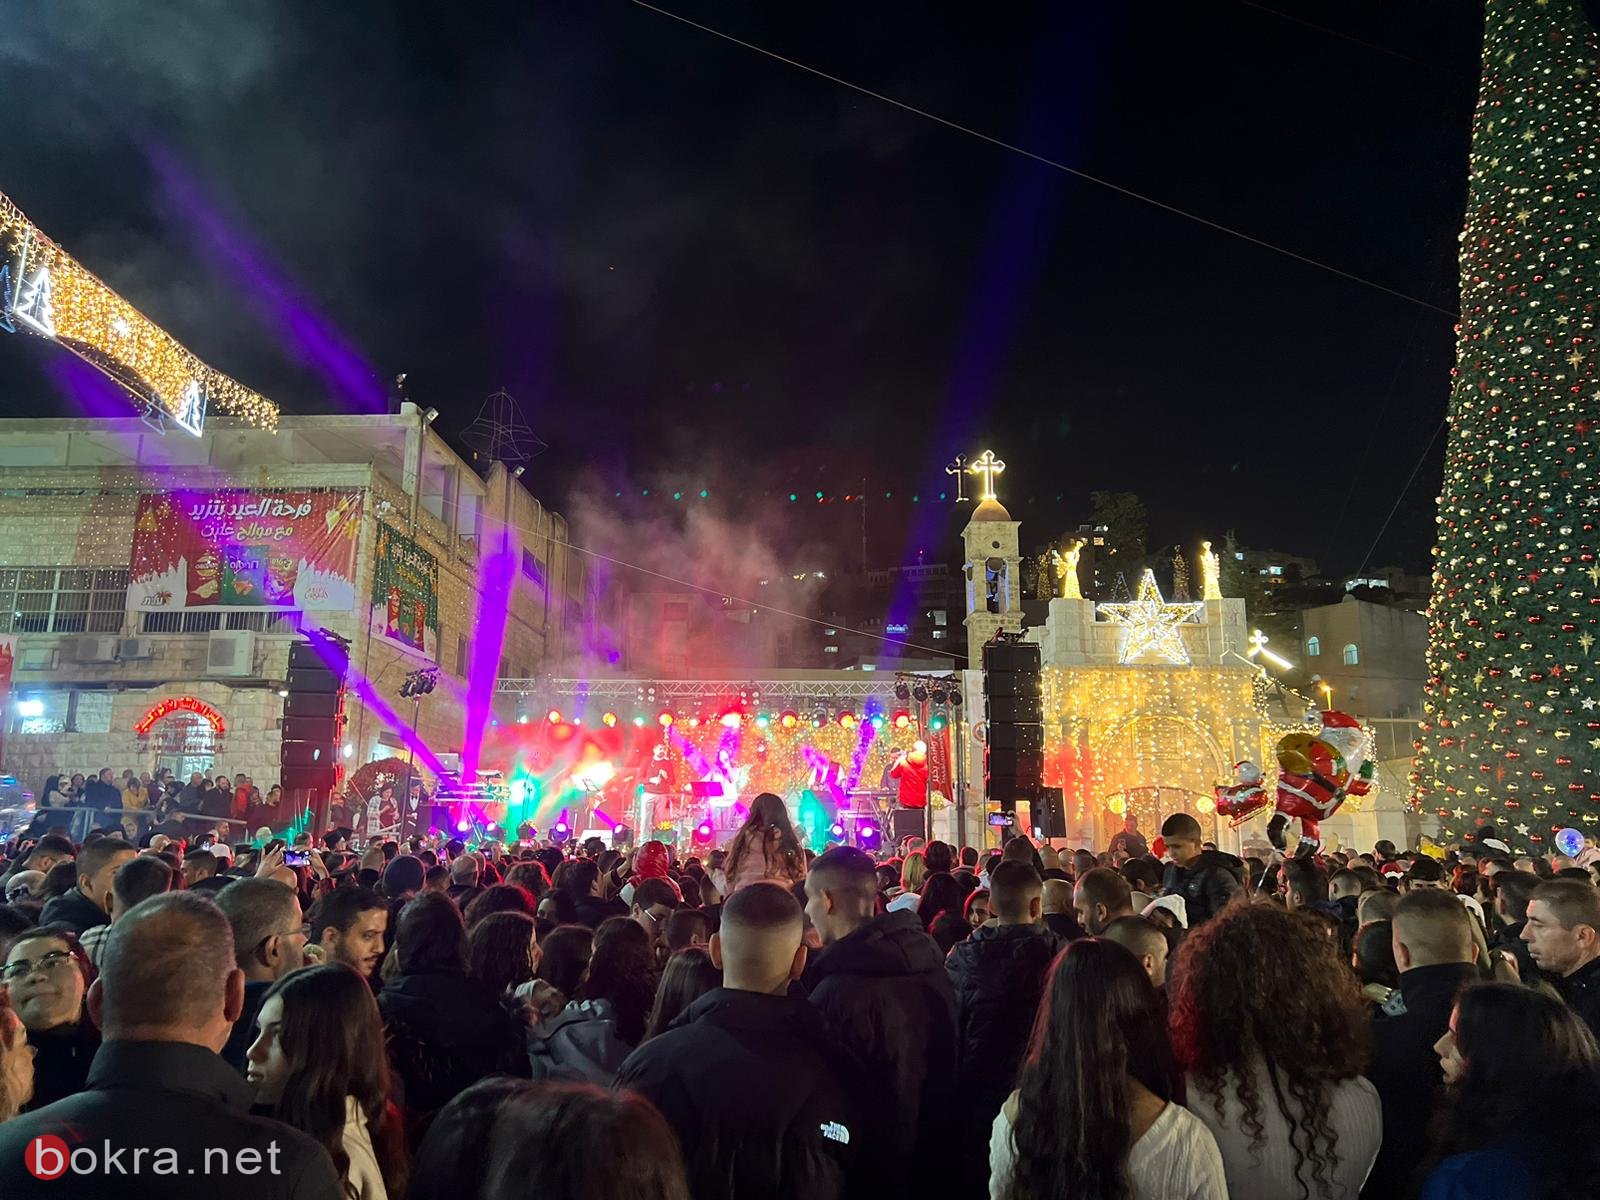 الناصرة: الاف المشاركين في احتفال اضاءة شجرة عيد الميلاد في ساحة العين-16